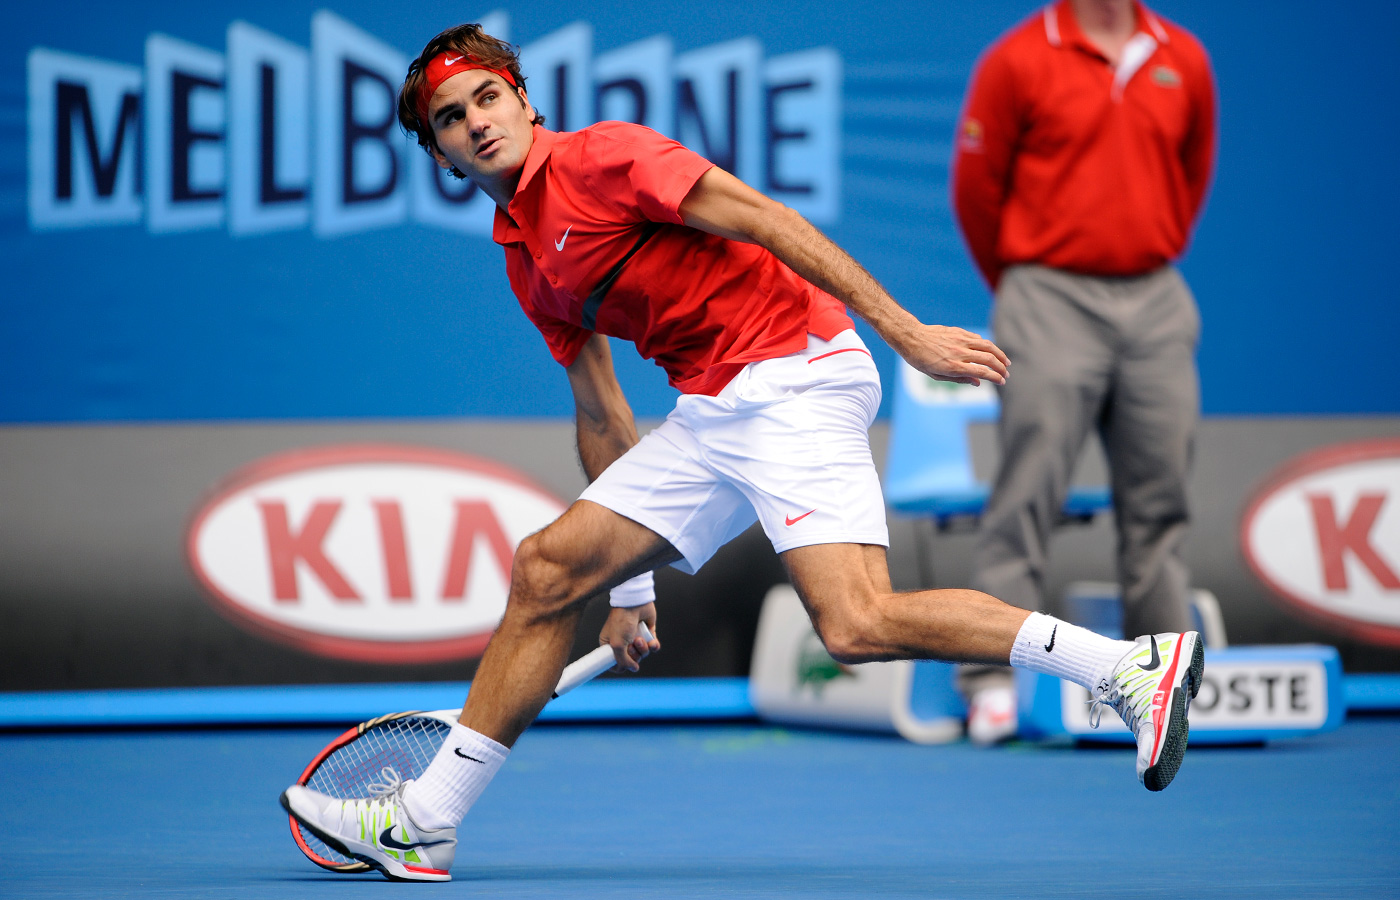 Roger Federer wygrał Wimbledon! Andy Murray w cieniu Króla